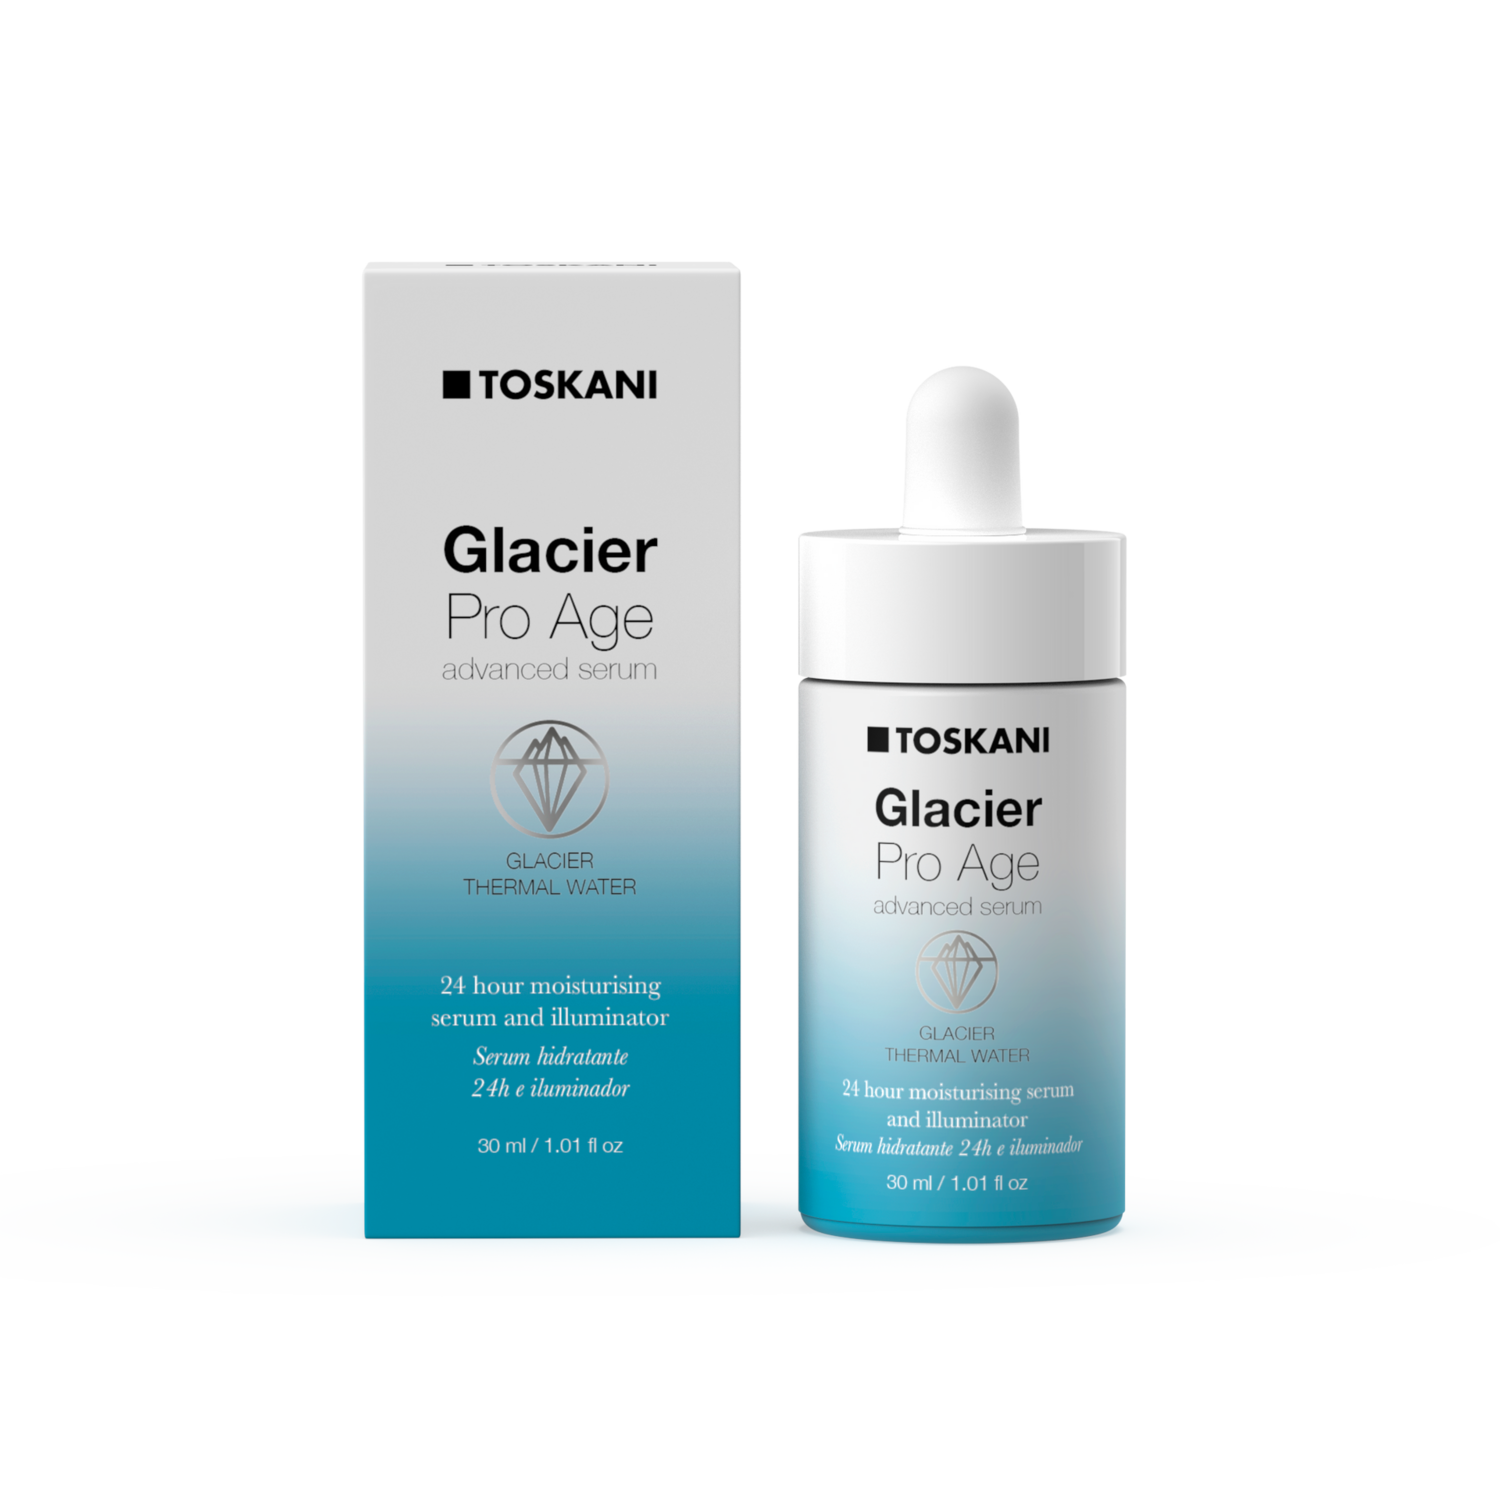 Toskani - Glacier Pro Age advanced serum